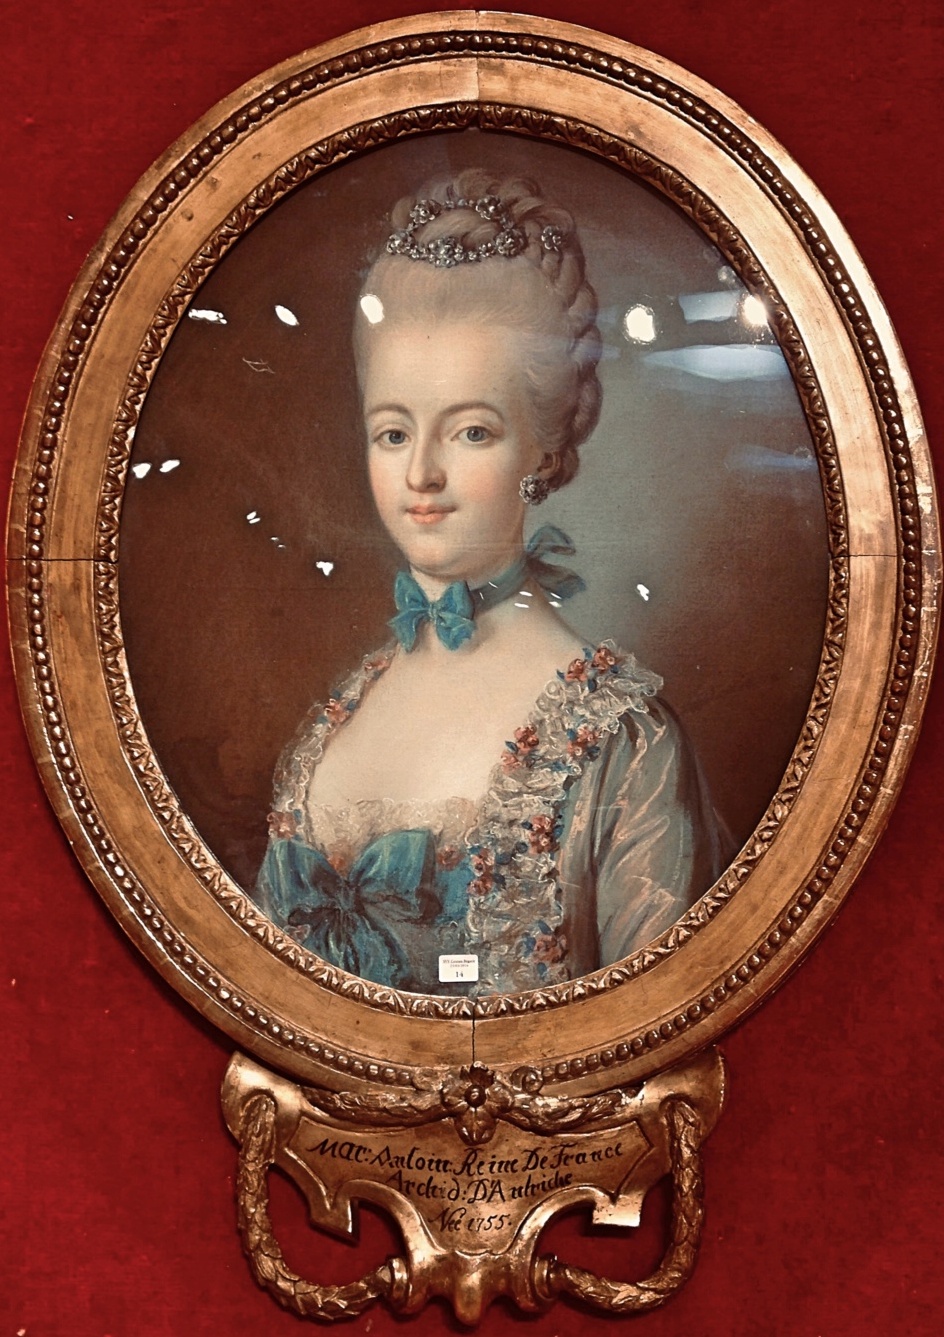 josephe - Portrait de Marie-Antoinette ou de Marie-Josèphe, par Meytens ? - Page 5 Adf8fd11